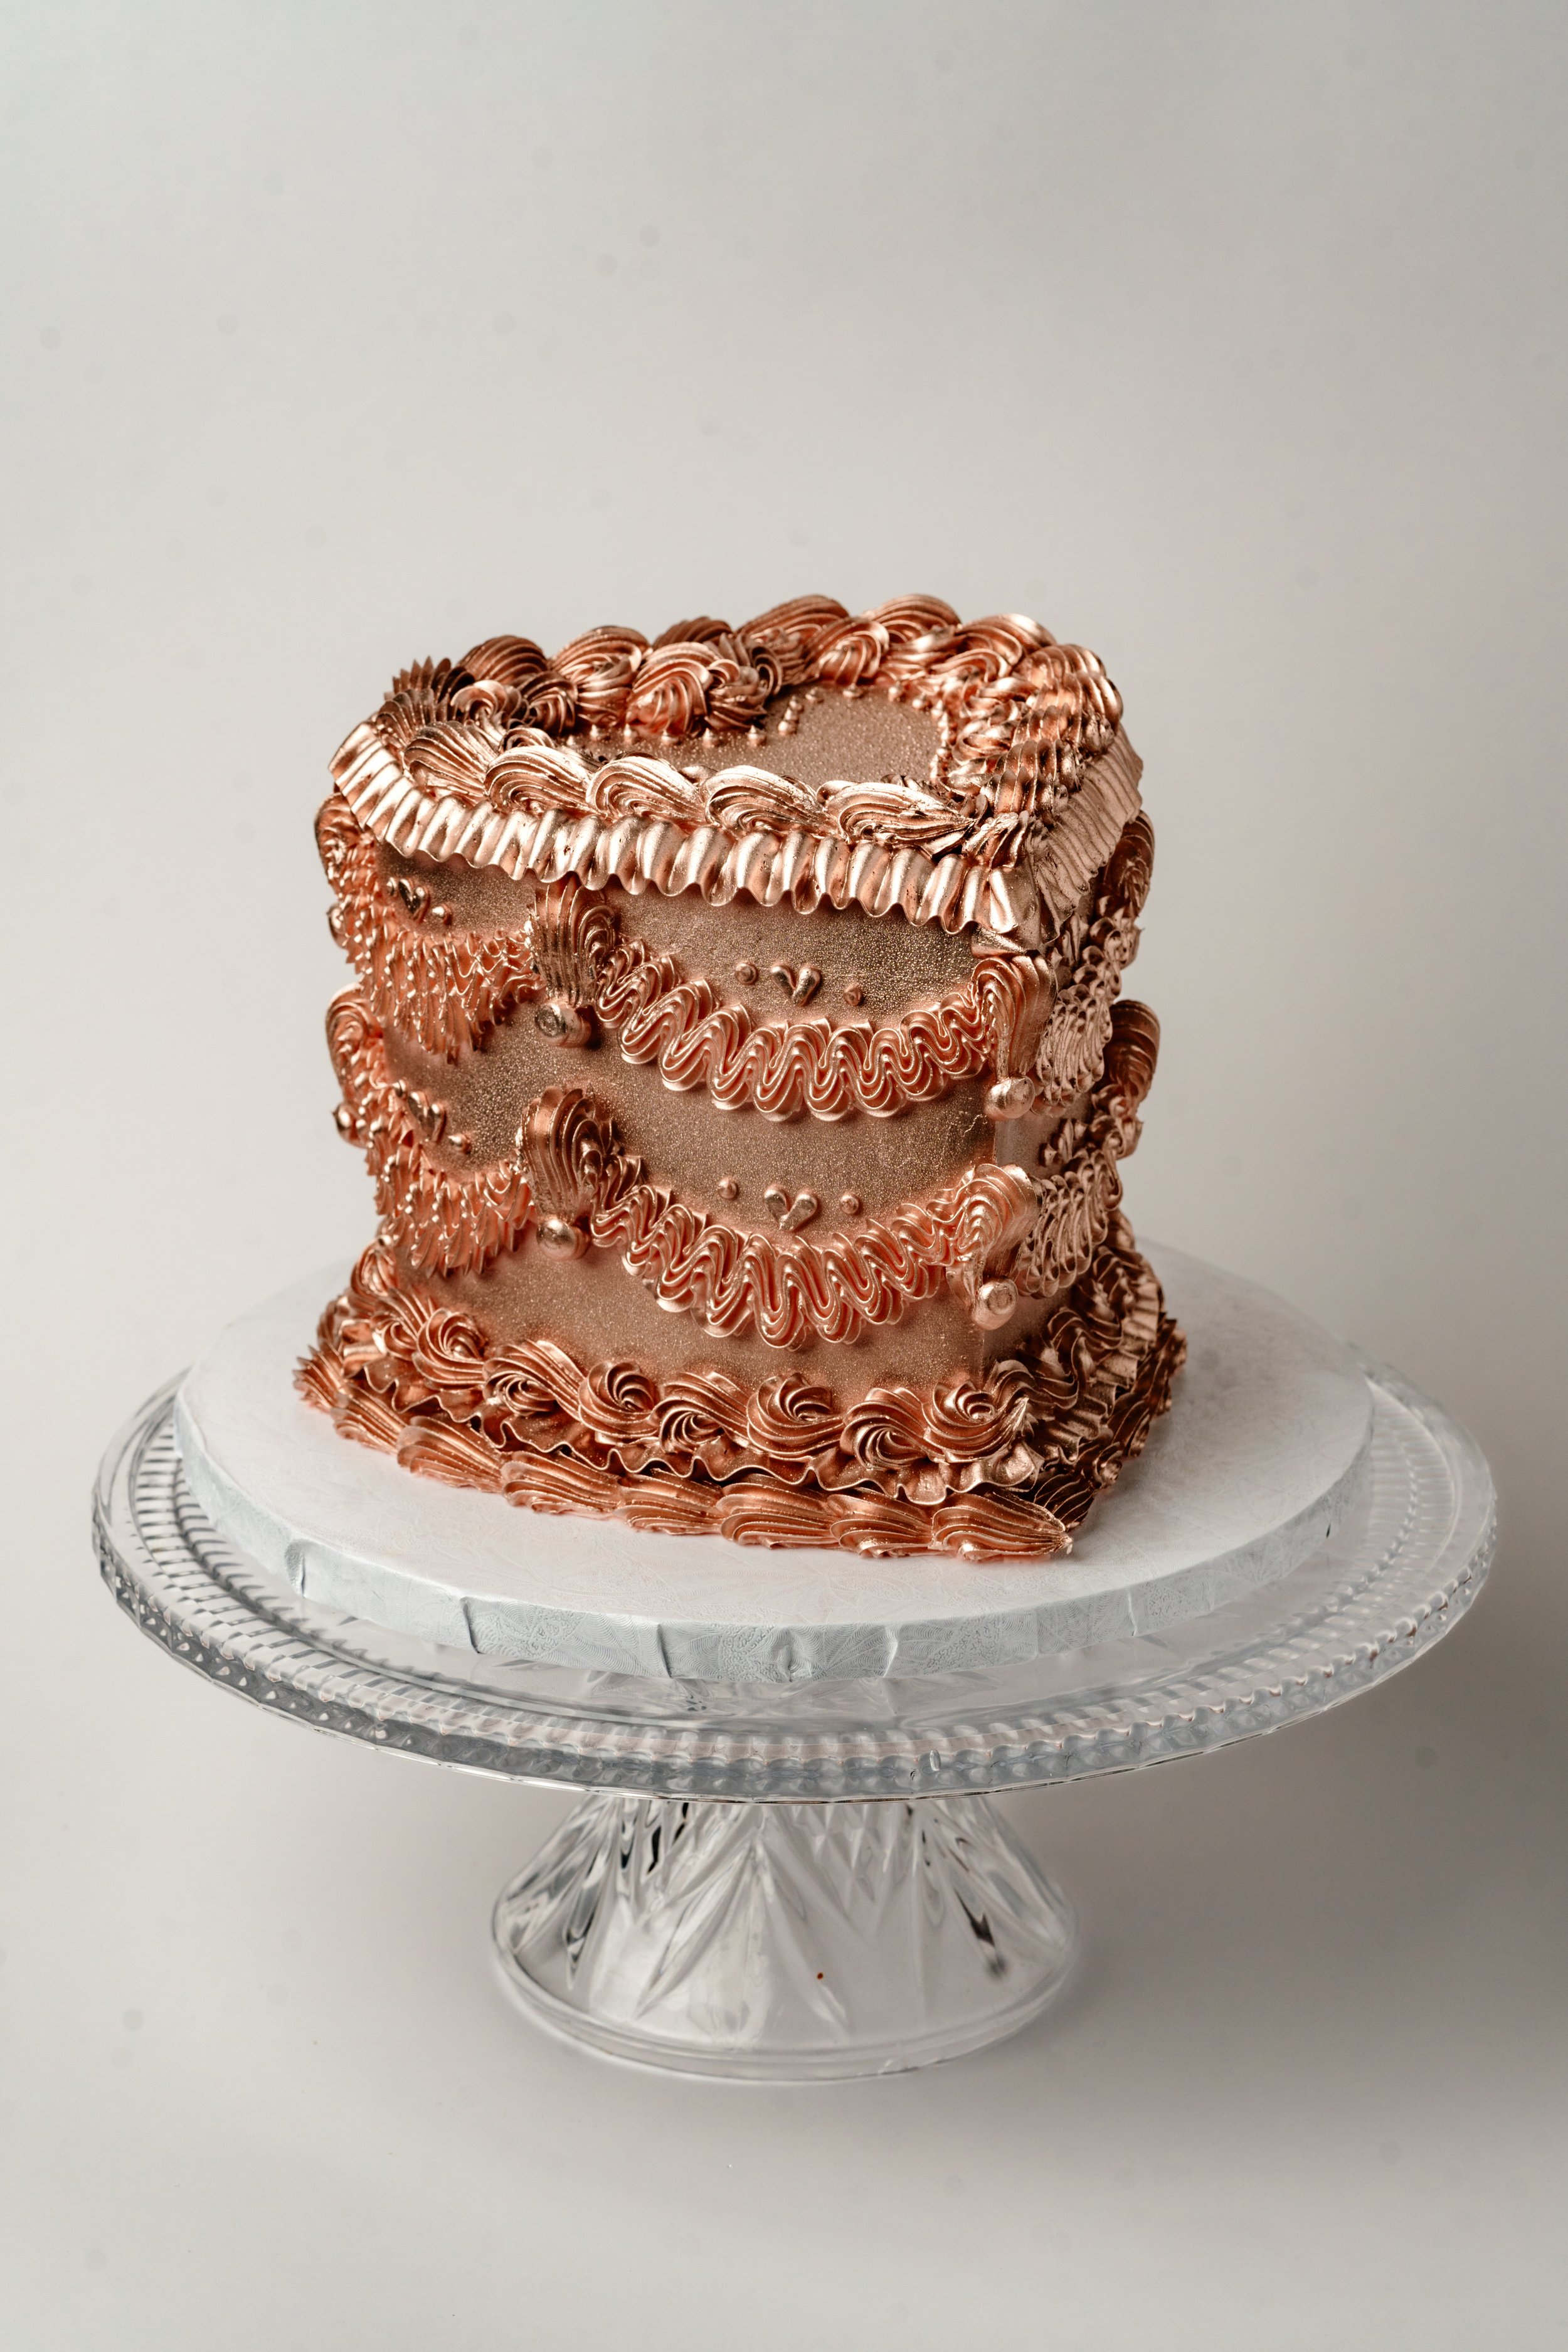 ECBG Cake Studio Custom Chicago Bakery Cakes Trophy Wife 1.jpg